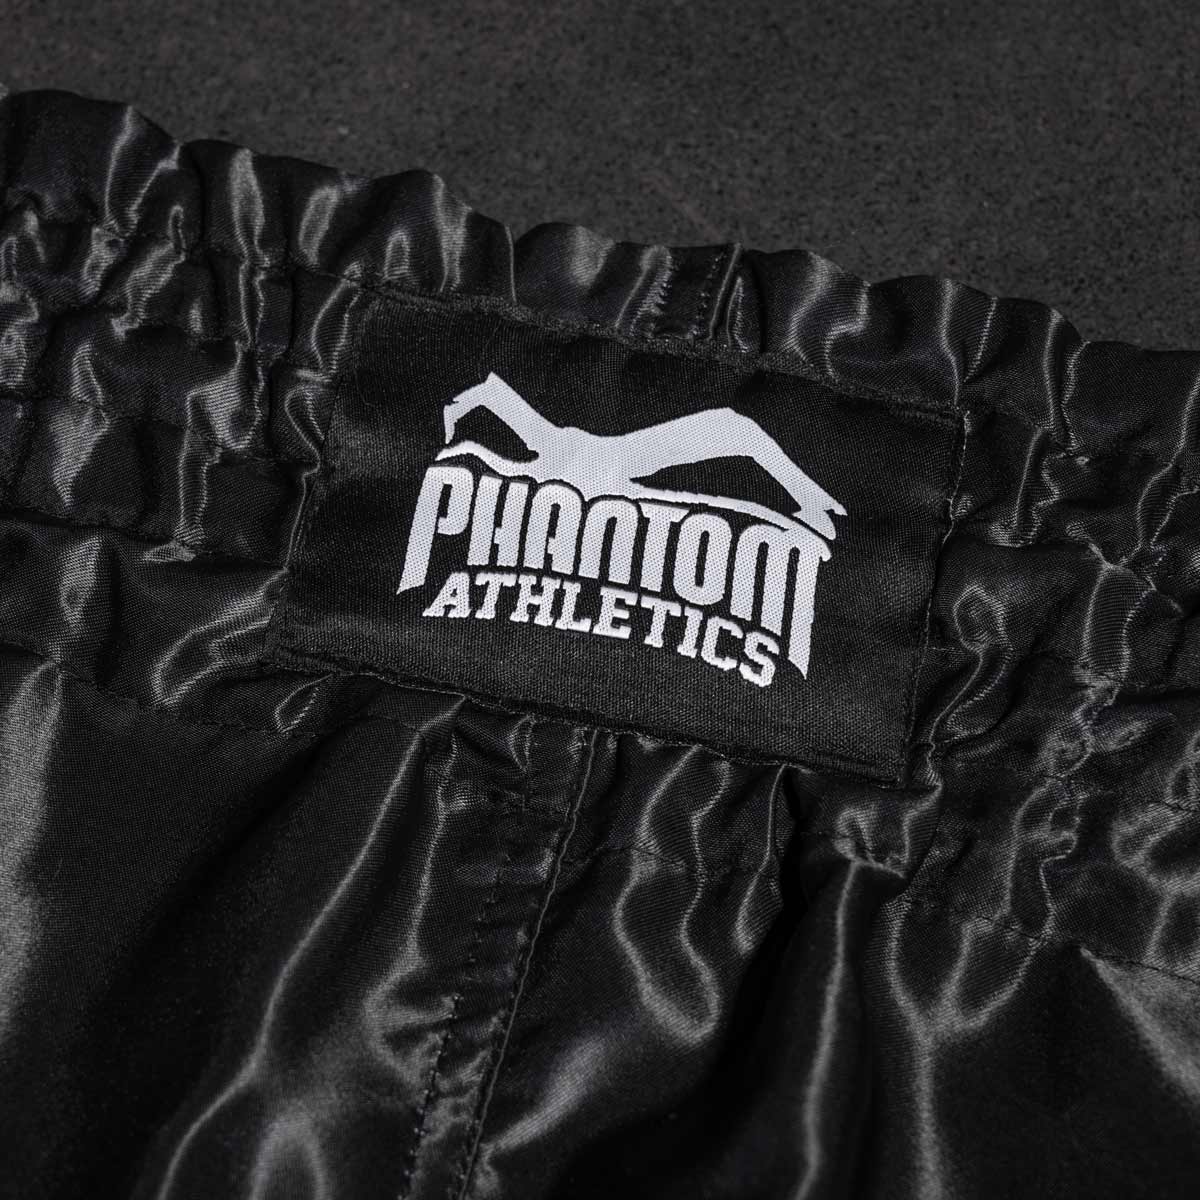 Die Phantom Muay Thai Shorts Team in schwarz. Oldschool Satin Stoff verleiht dir original Thailand Feeling. In gewohnter Phantom Athletics Qualität. Ideal für dein Thaibox Training und den Wettkampf.